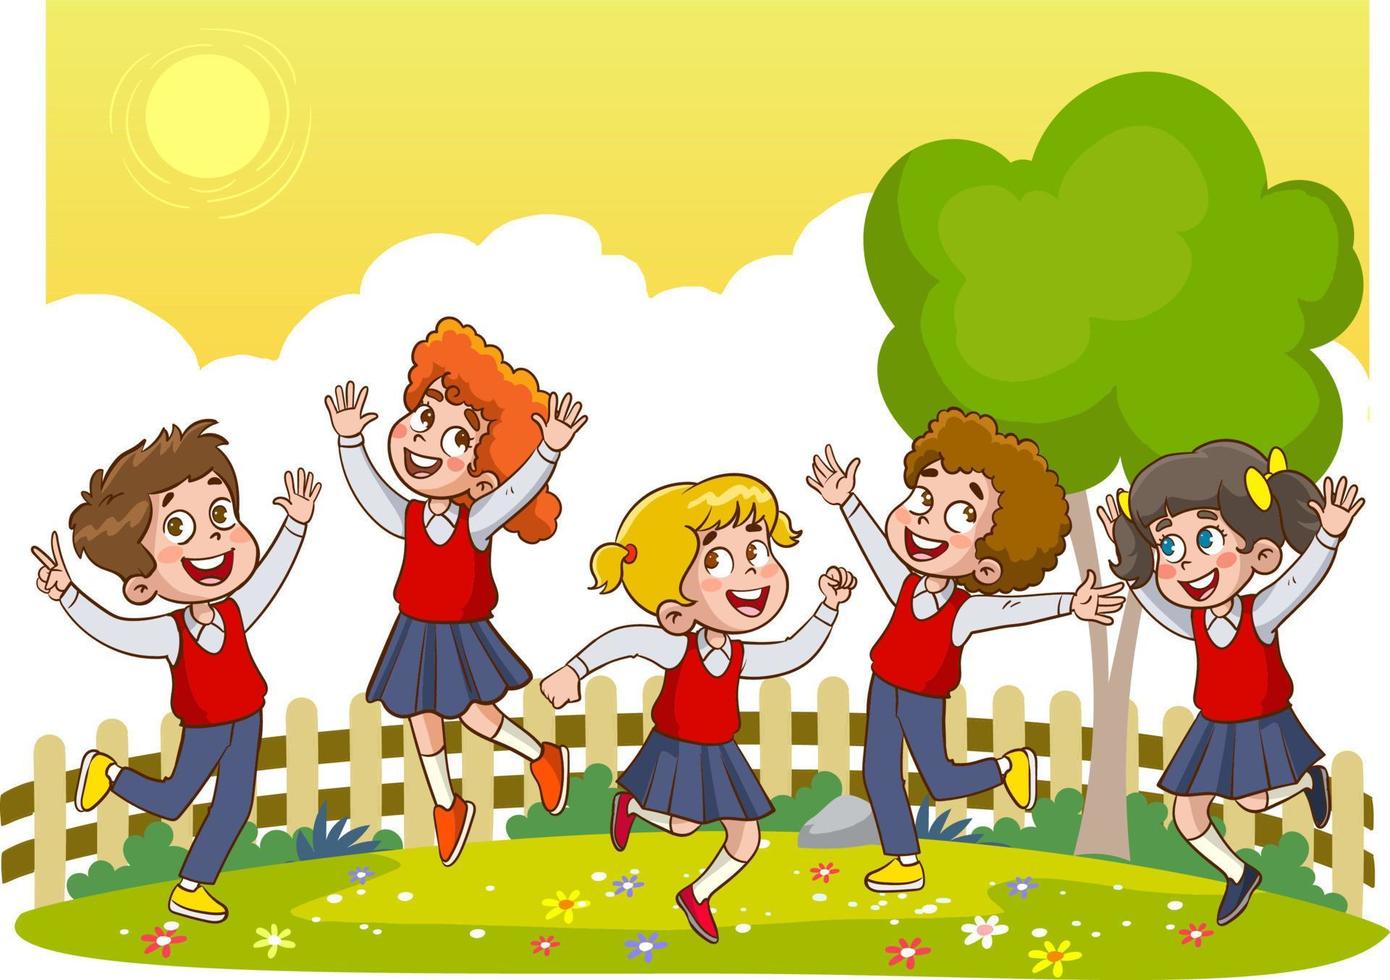 niños y niñas lindos y felices estudian con el maestro. ilustraciones de la vida escolar de los niños alegres. vector